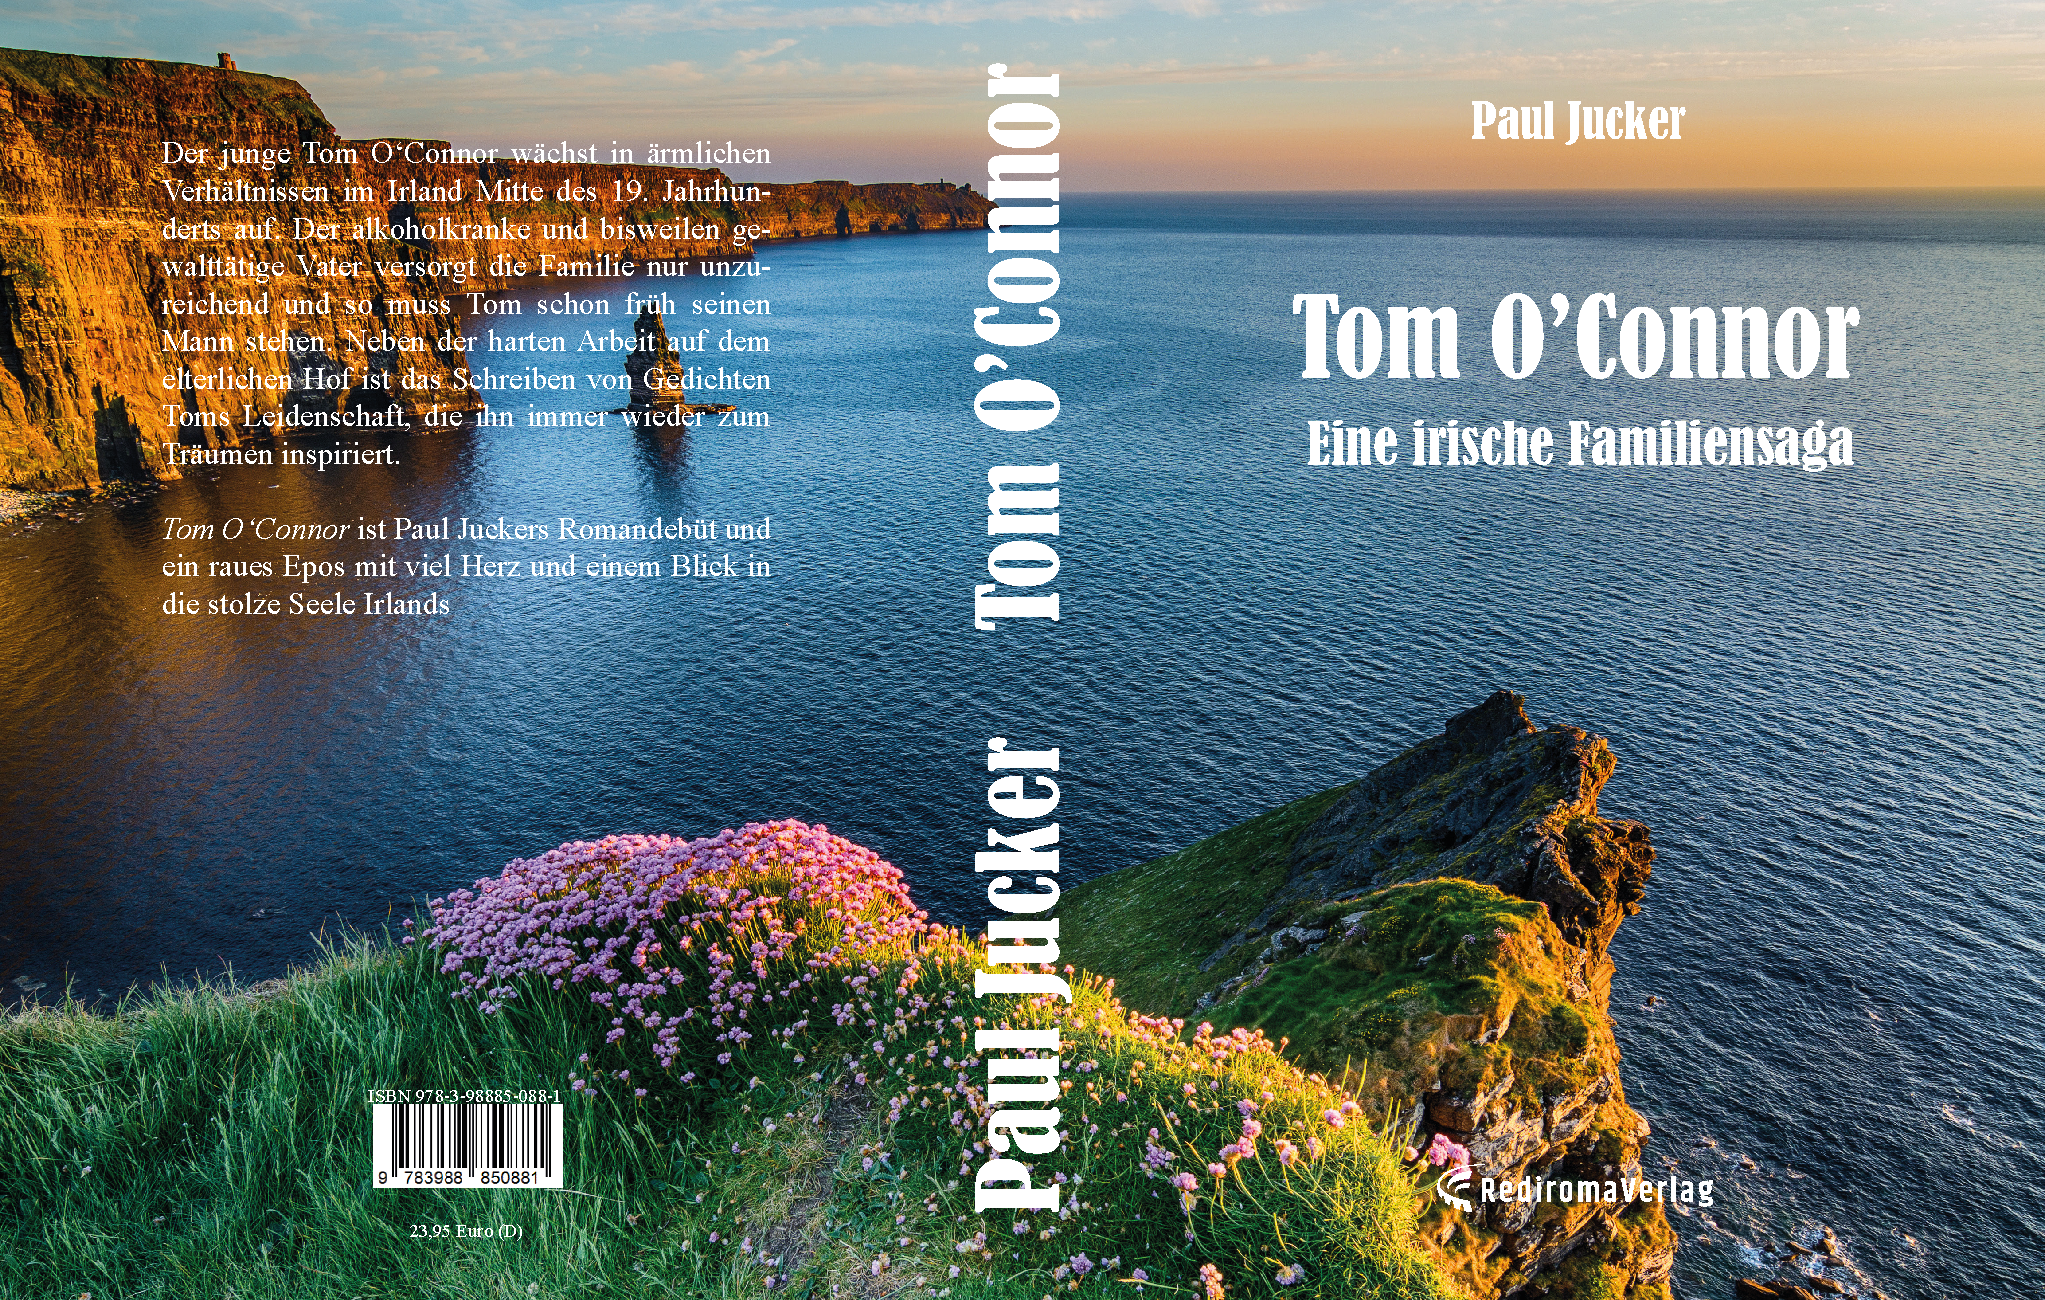 Buch "Tom O’Connor" von Paul Jucker